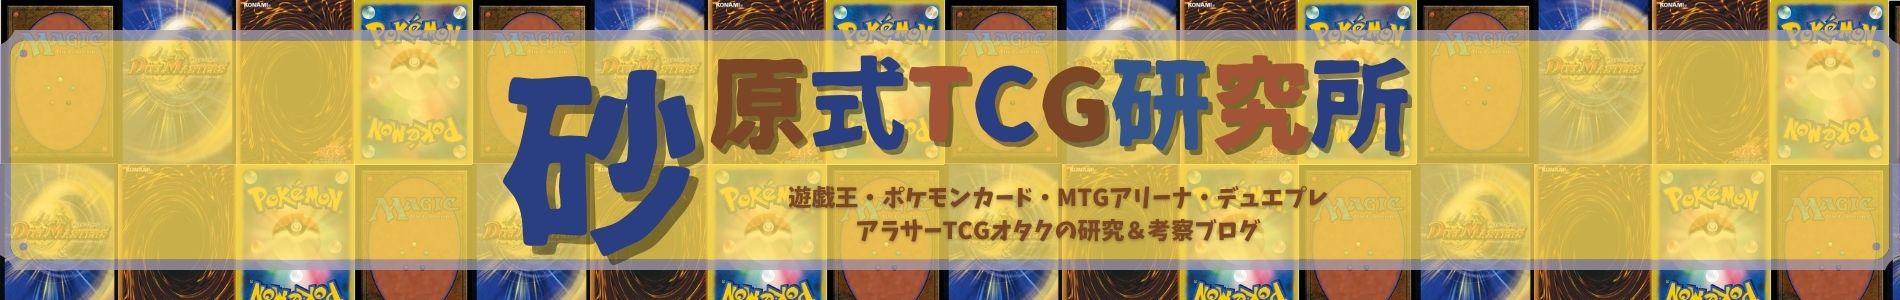 砂原式TCG研究所【遊戯王ブログ】